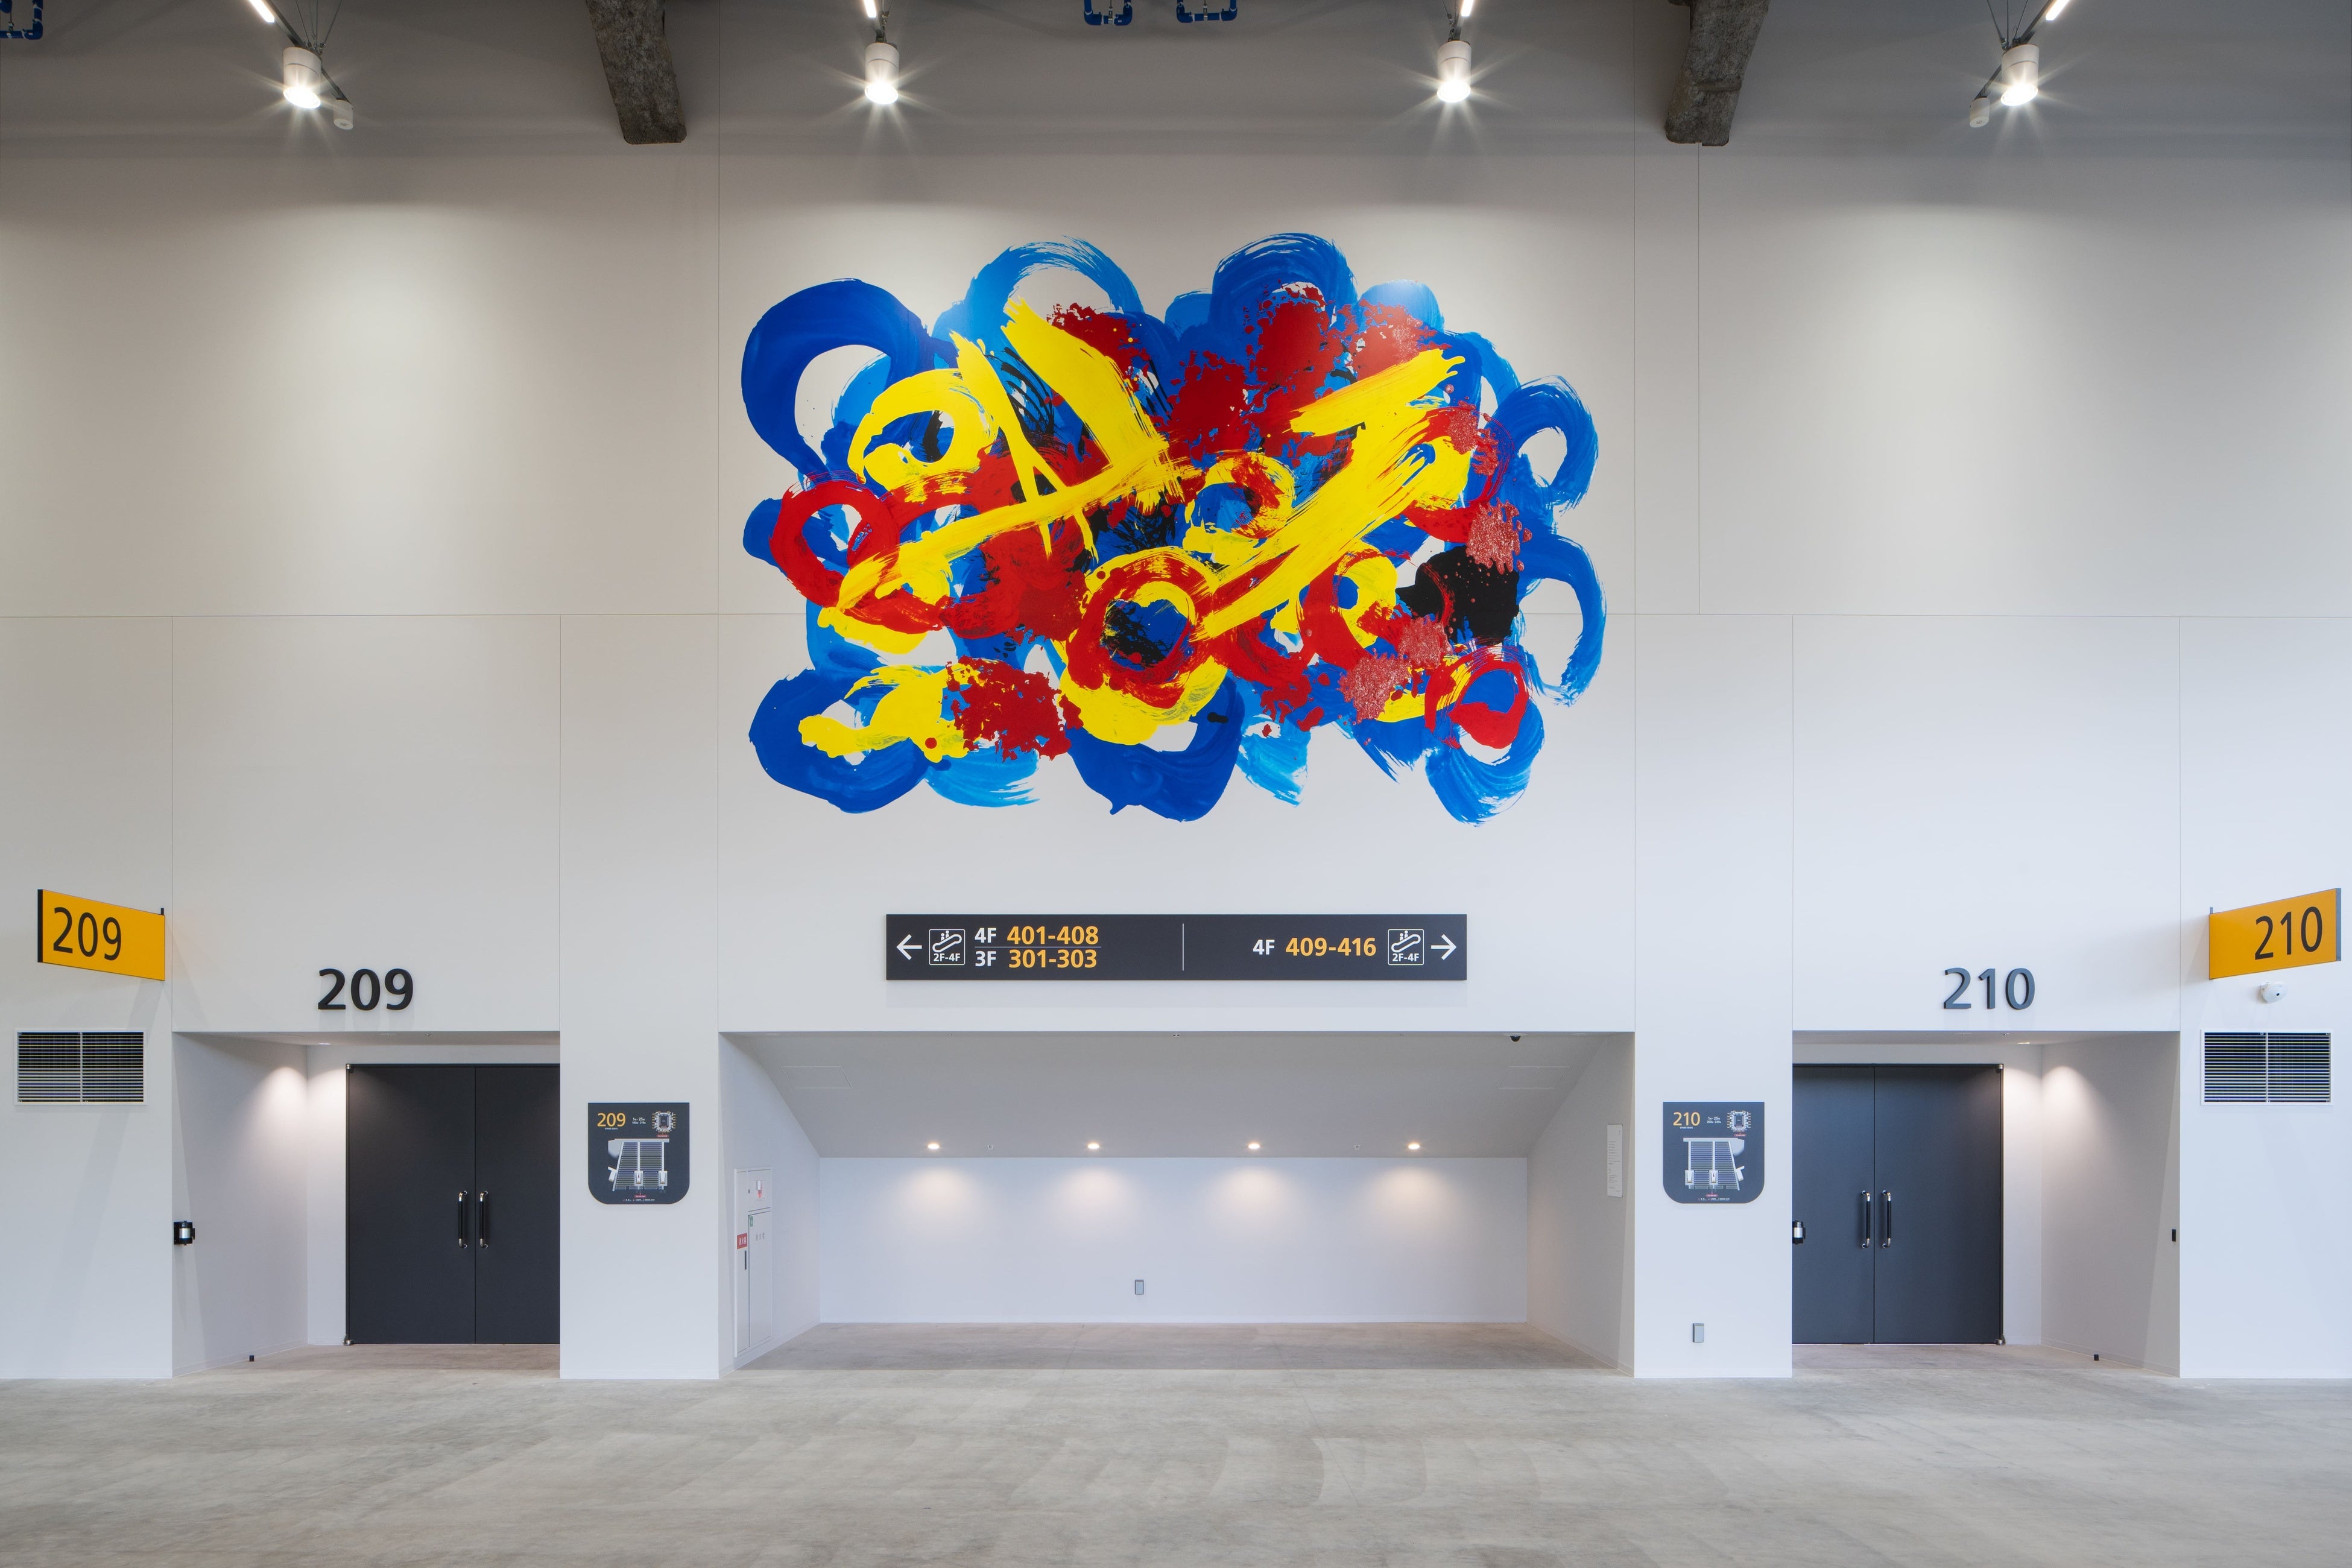 ヘラルボニー、「LaLa arena TOKYO-BAY」の2階コンコース壁面に巨大アートを装飾